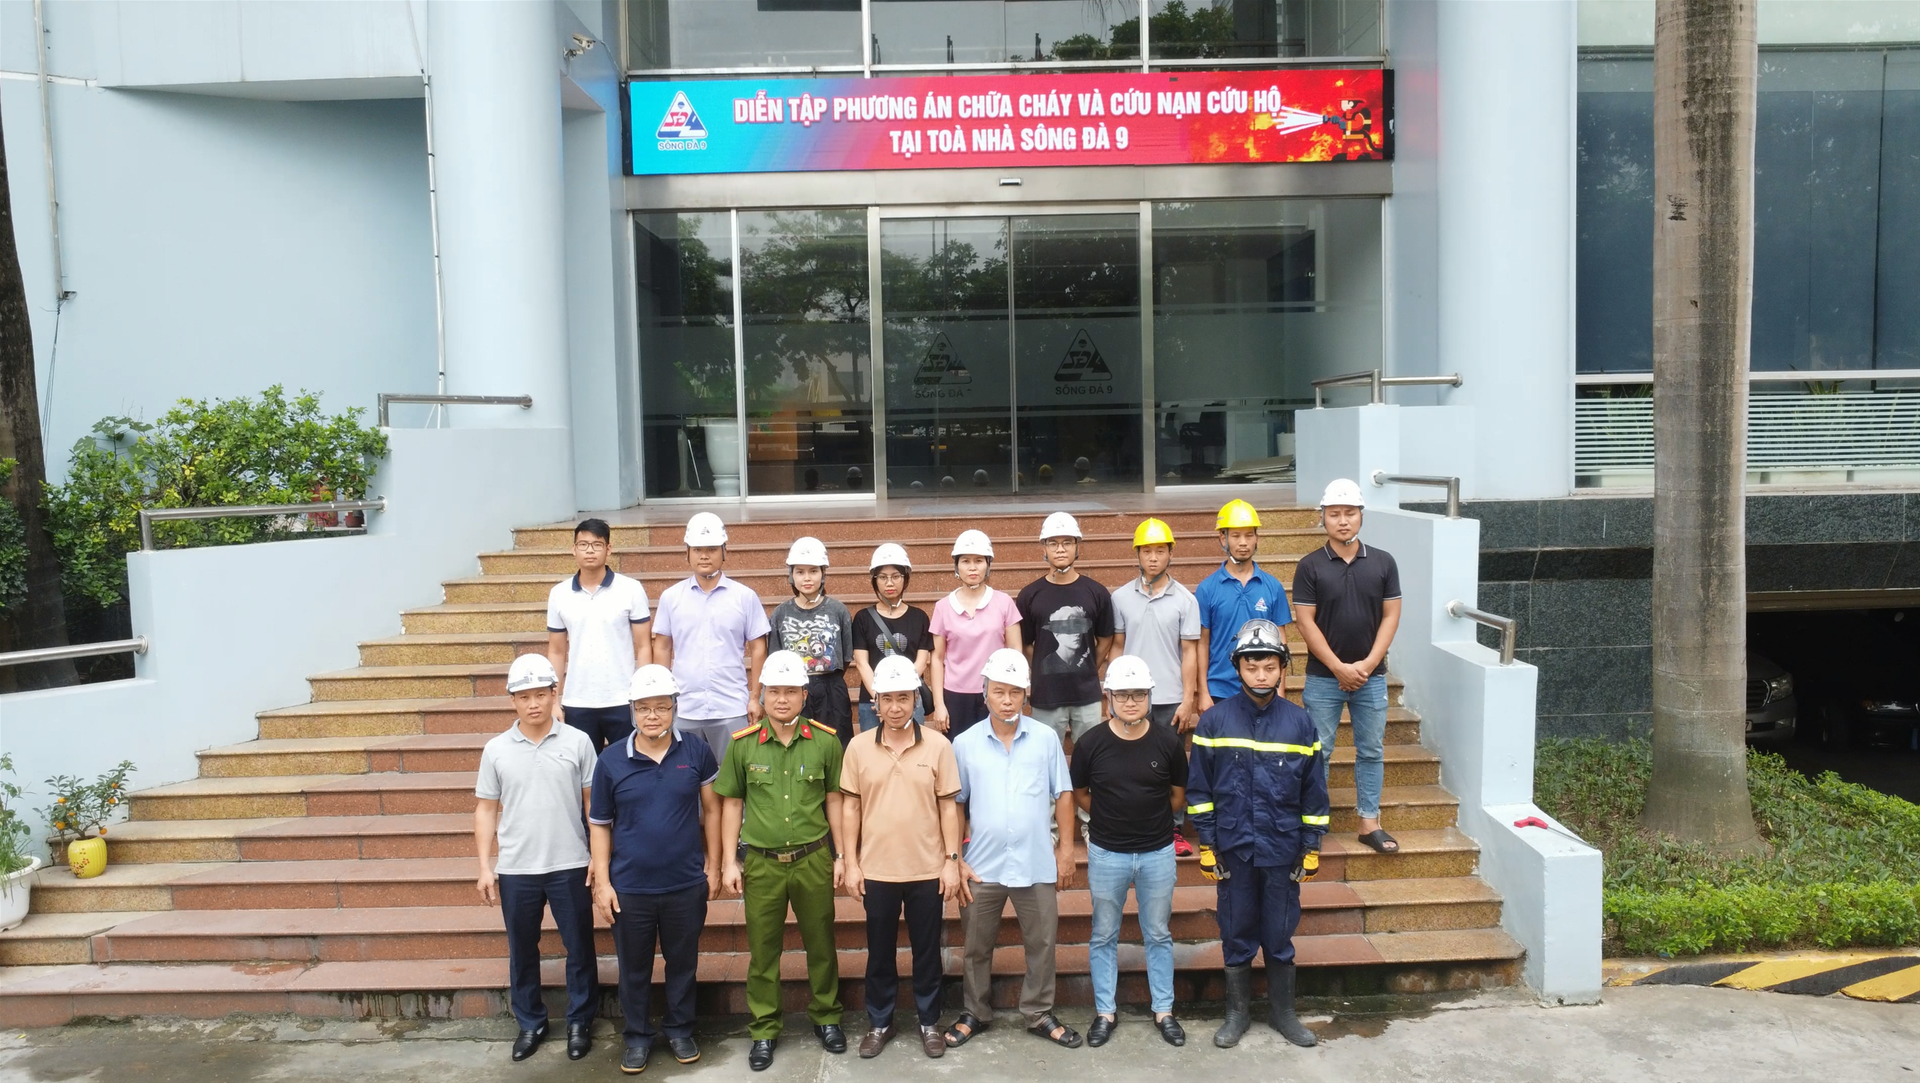 Công ty cổ phần Sông Đà 9 tổ chức tập huấn nghiệp vụ PCCC và diễn tập phương án chữa cháy năm 2024 tại Tòa nhà Sông Đà 9